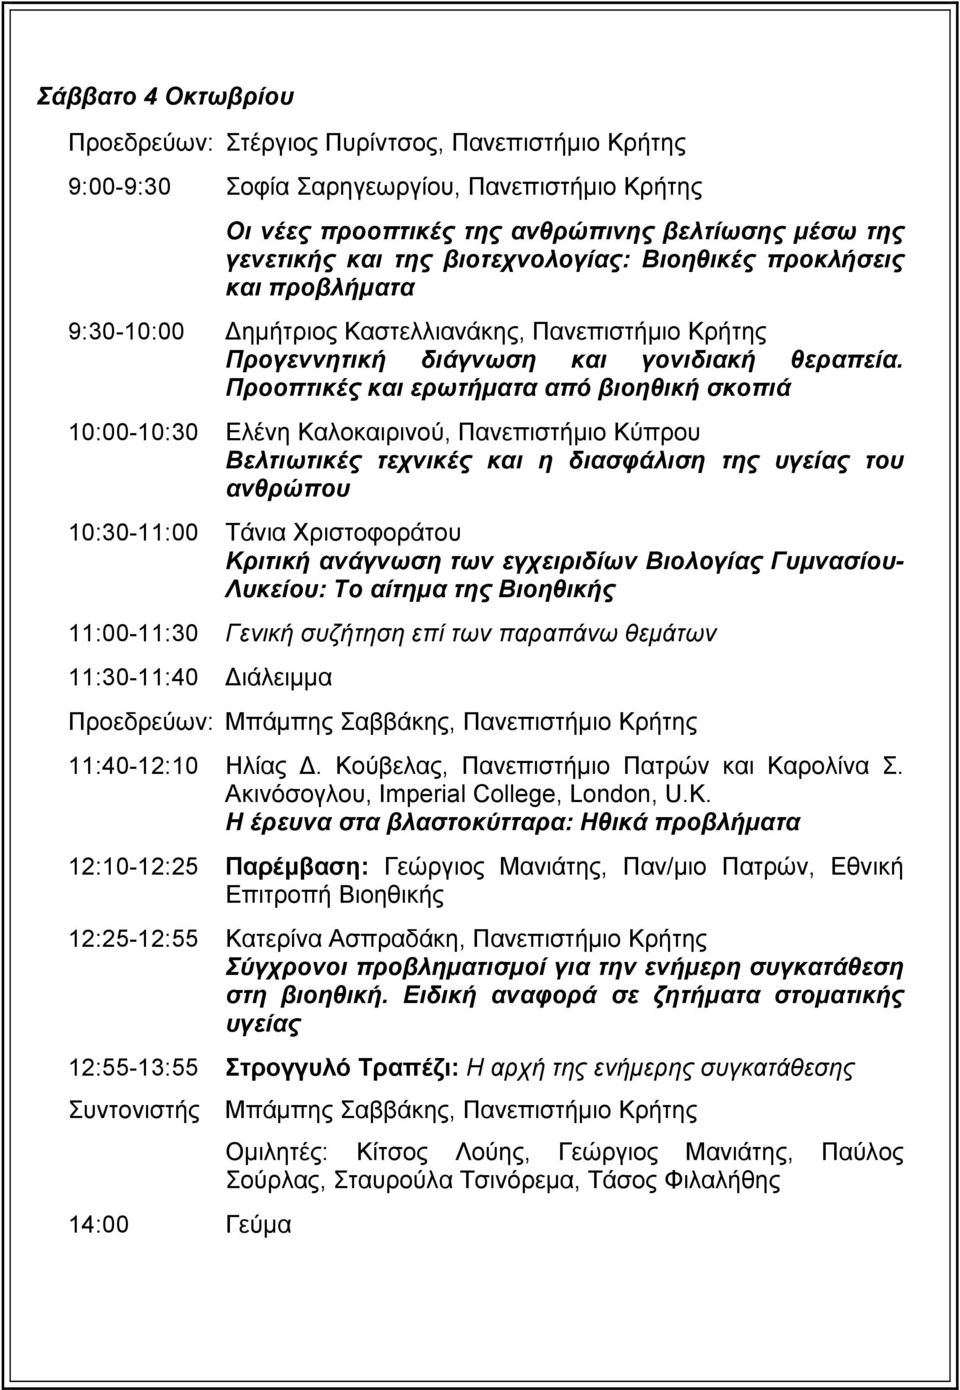 Προοπτικές και ερωτήματα από βιοηθική σκοπιά 10:00-10:30 Ελένη Καλοκαιρινού, Πανεπιστήμιο Κύπρου Βελτιωτικές τεχνικές και η διασφάλιση της υγείας του ανθρώπου 10:30-11:00 Τάνια Χριστοφοράτου Κριτική